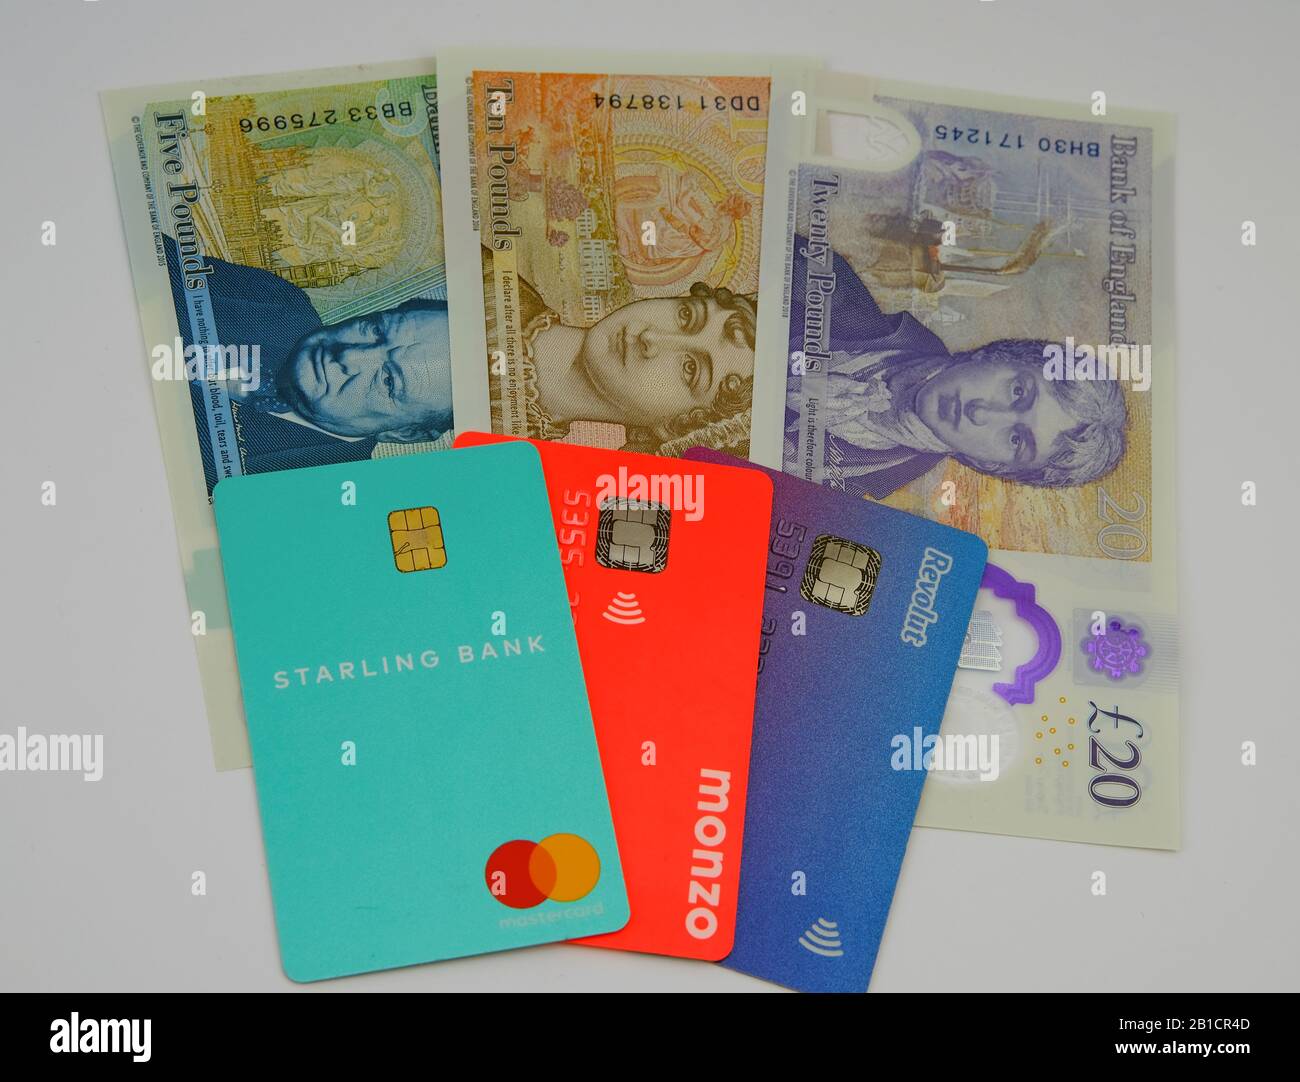 Starling, Monzo, carte bancarie Revolut sulle nuove banconote in sterline. Concetto per evidenziare gamma di colori simili delle fatture e della banca britanniche. Foto Stock